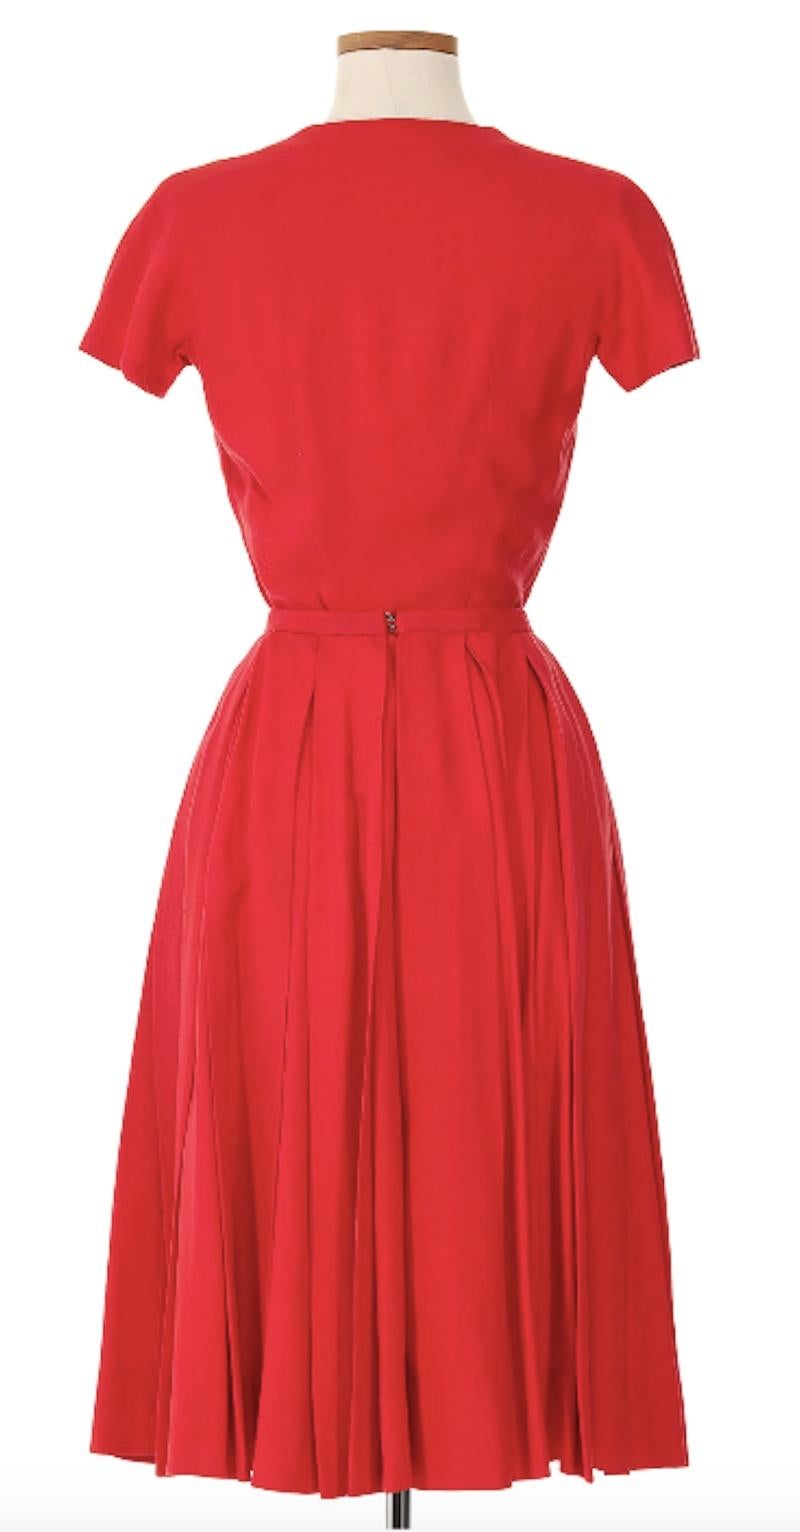 Balenciaga Roter Rock Anzug ca. 1960er Jahre. Aus dem goldenen Zeitalter von Cristóbal Balenciaga stammt dieser leuchtend rote Rockanzug, der die Weiblichkeit und Eleganz der 60er-Jahre-Mode ausstrahlt. Perfekt auf die Taille geschneidert und mit